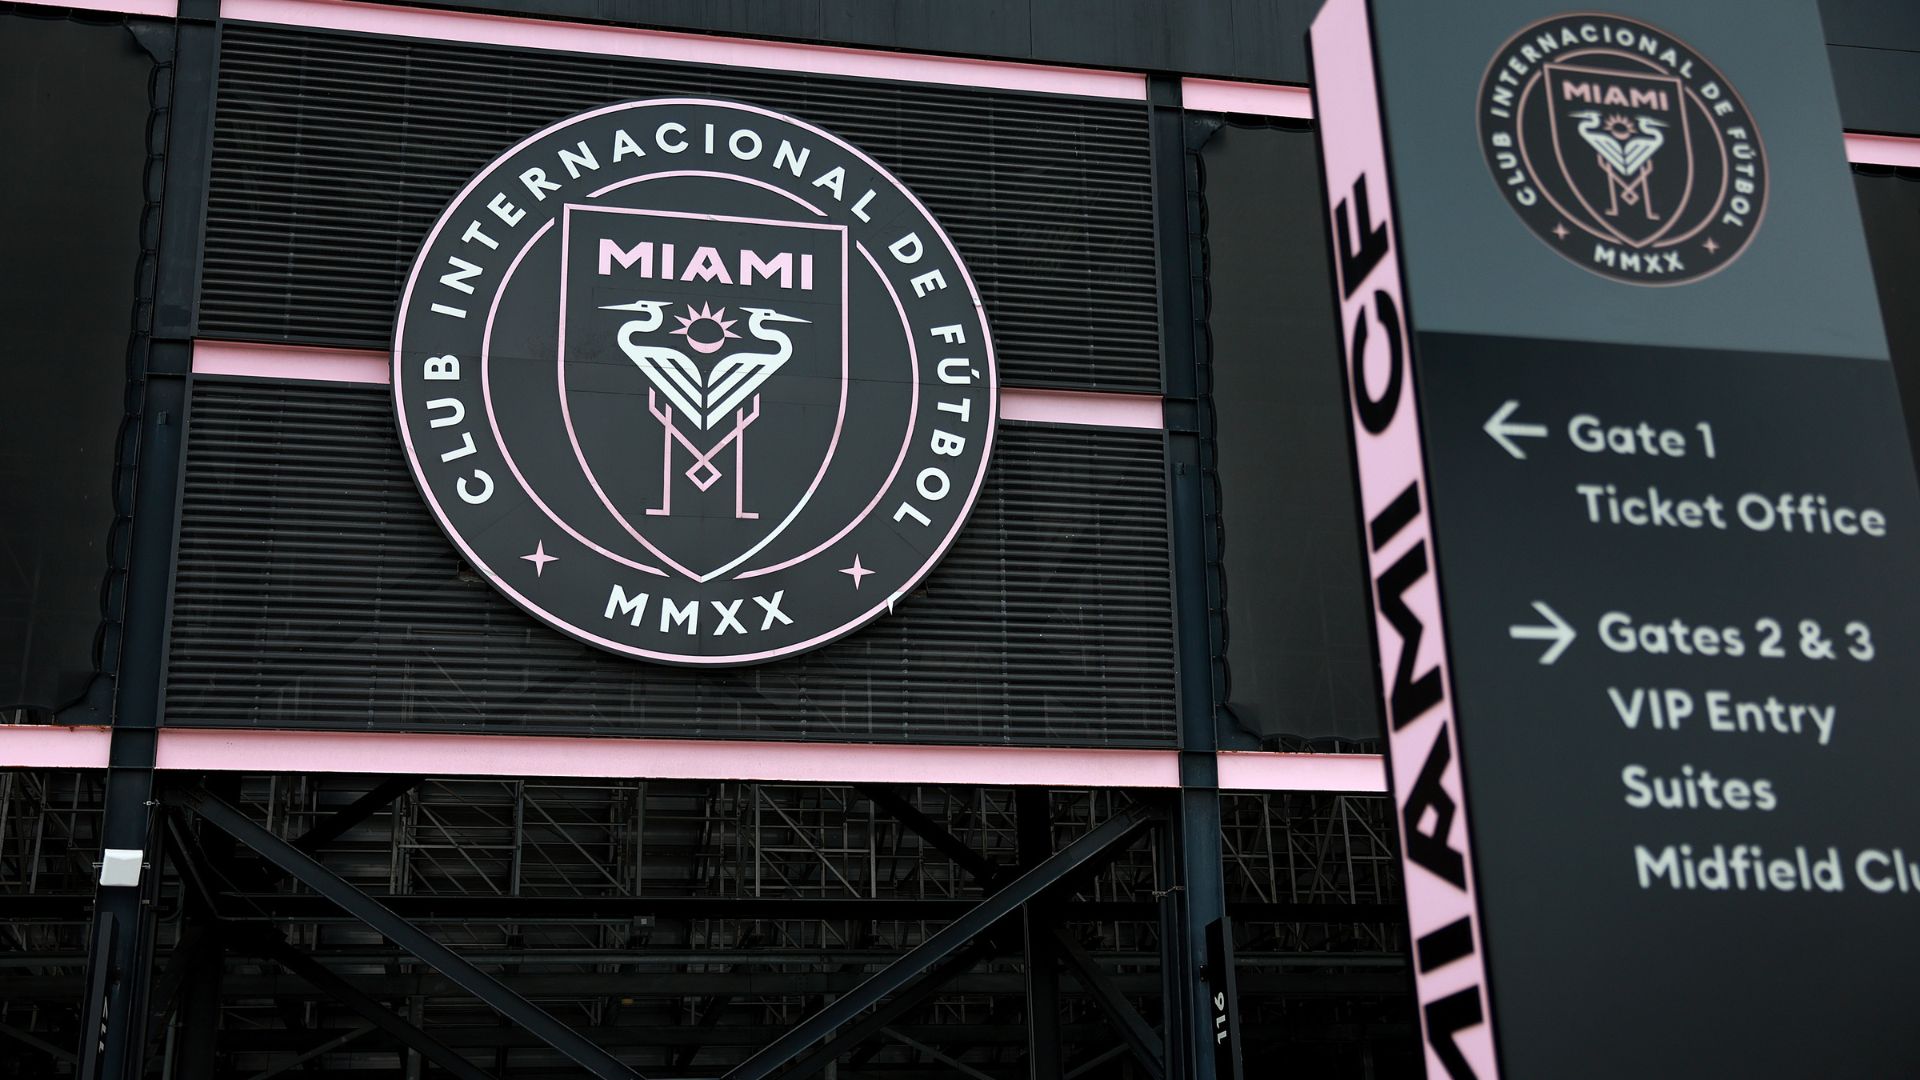 Imagens da faixada do estádio do Inter Miami (Crédito: Getty Images)